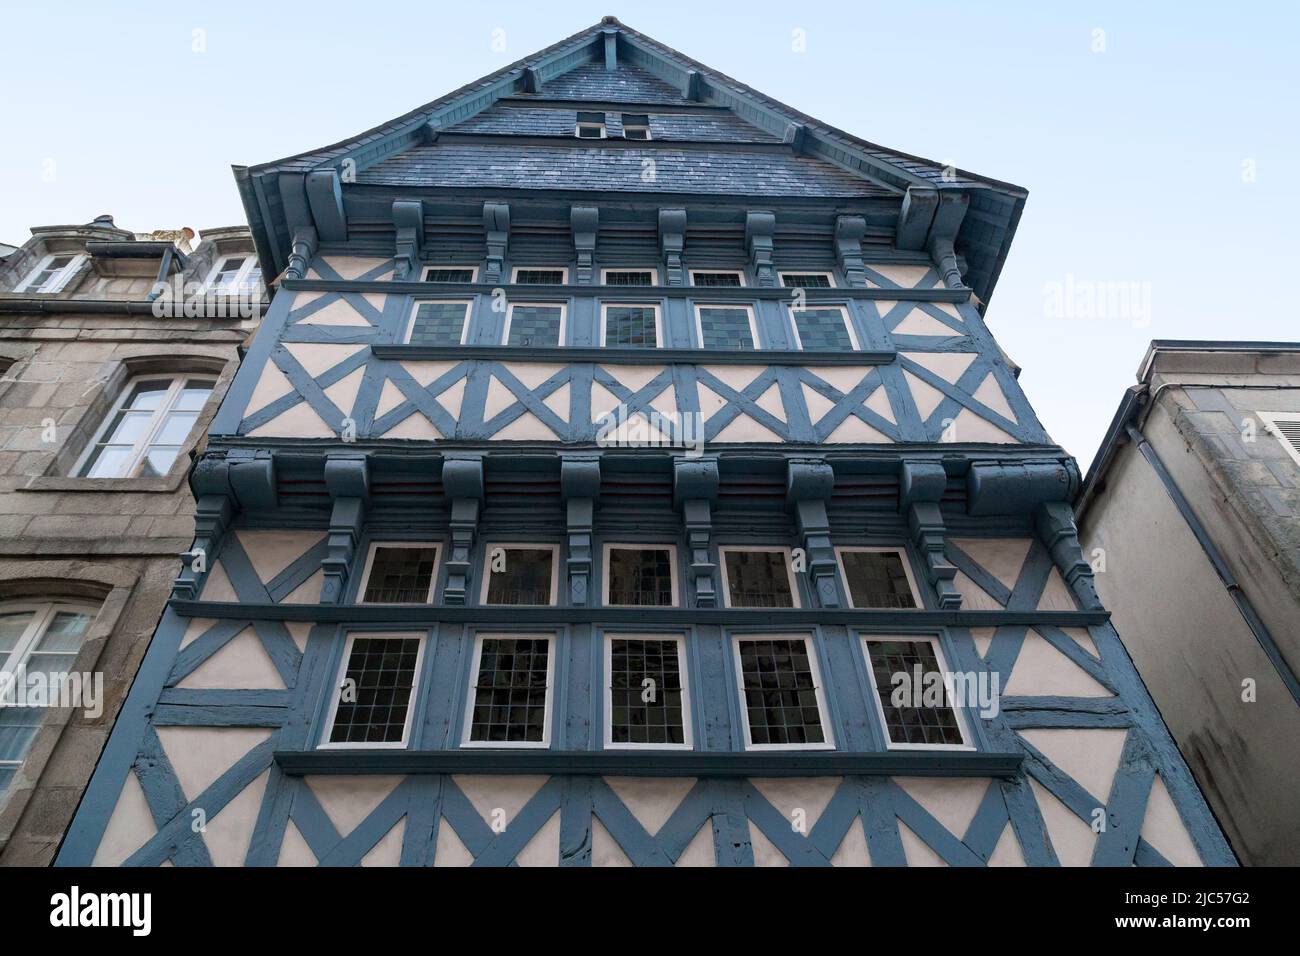 QUIMPER, FRANKREICH - 5. SEPTEMBER 2019: Dies ist die Fassade eines der erhaltenen historischen mittelalterlichen Fachwerkhäuser in den alten Straßen am Vorabend Stockfoto